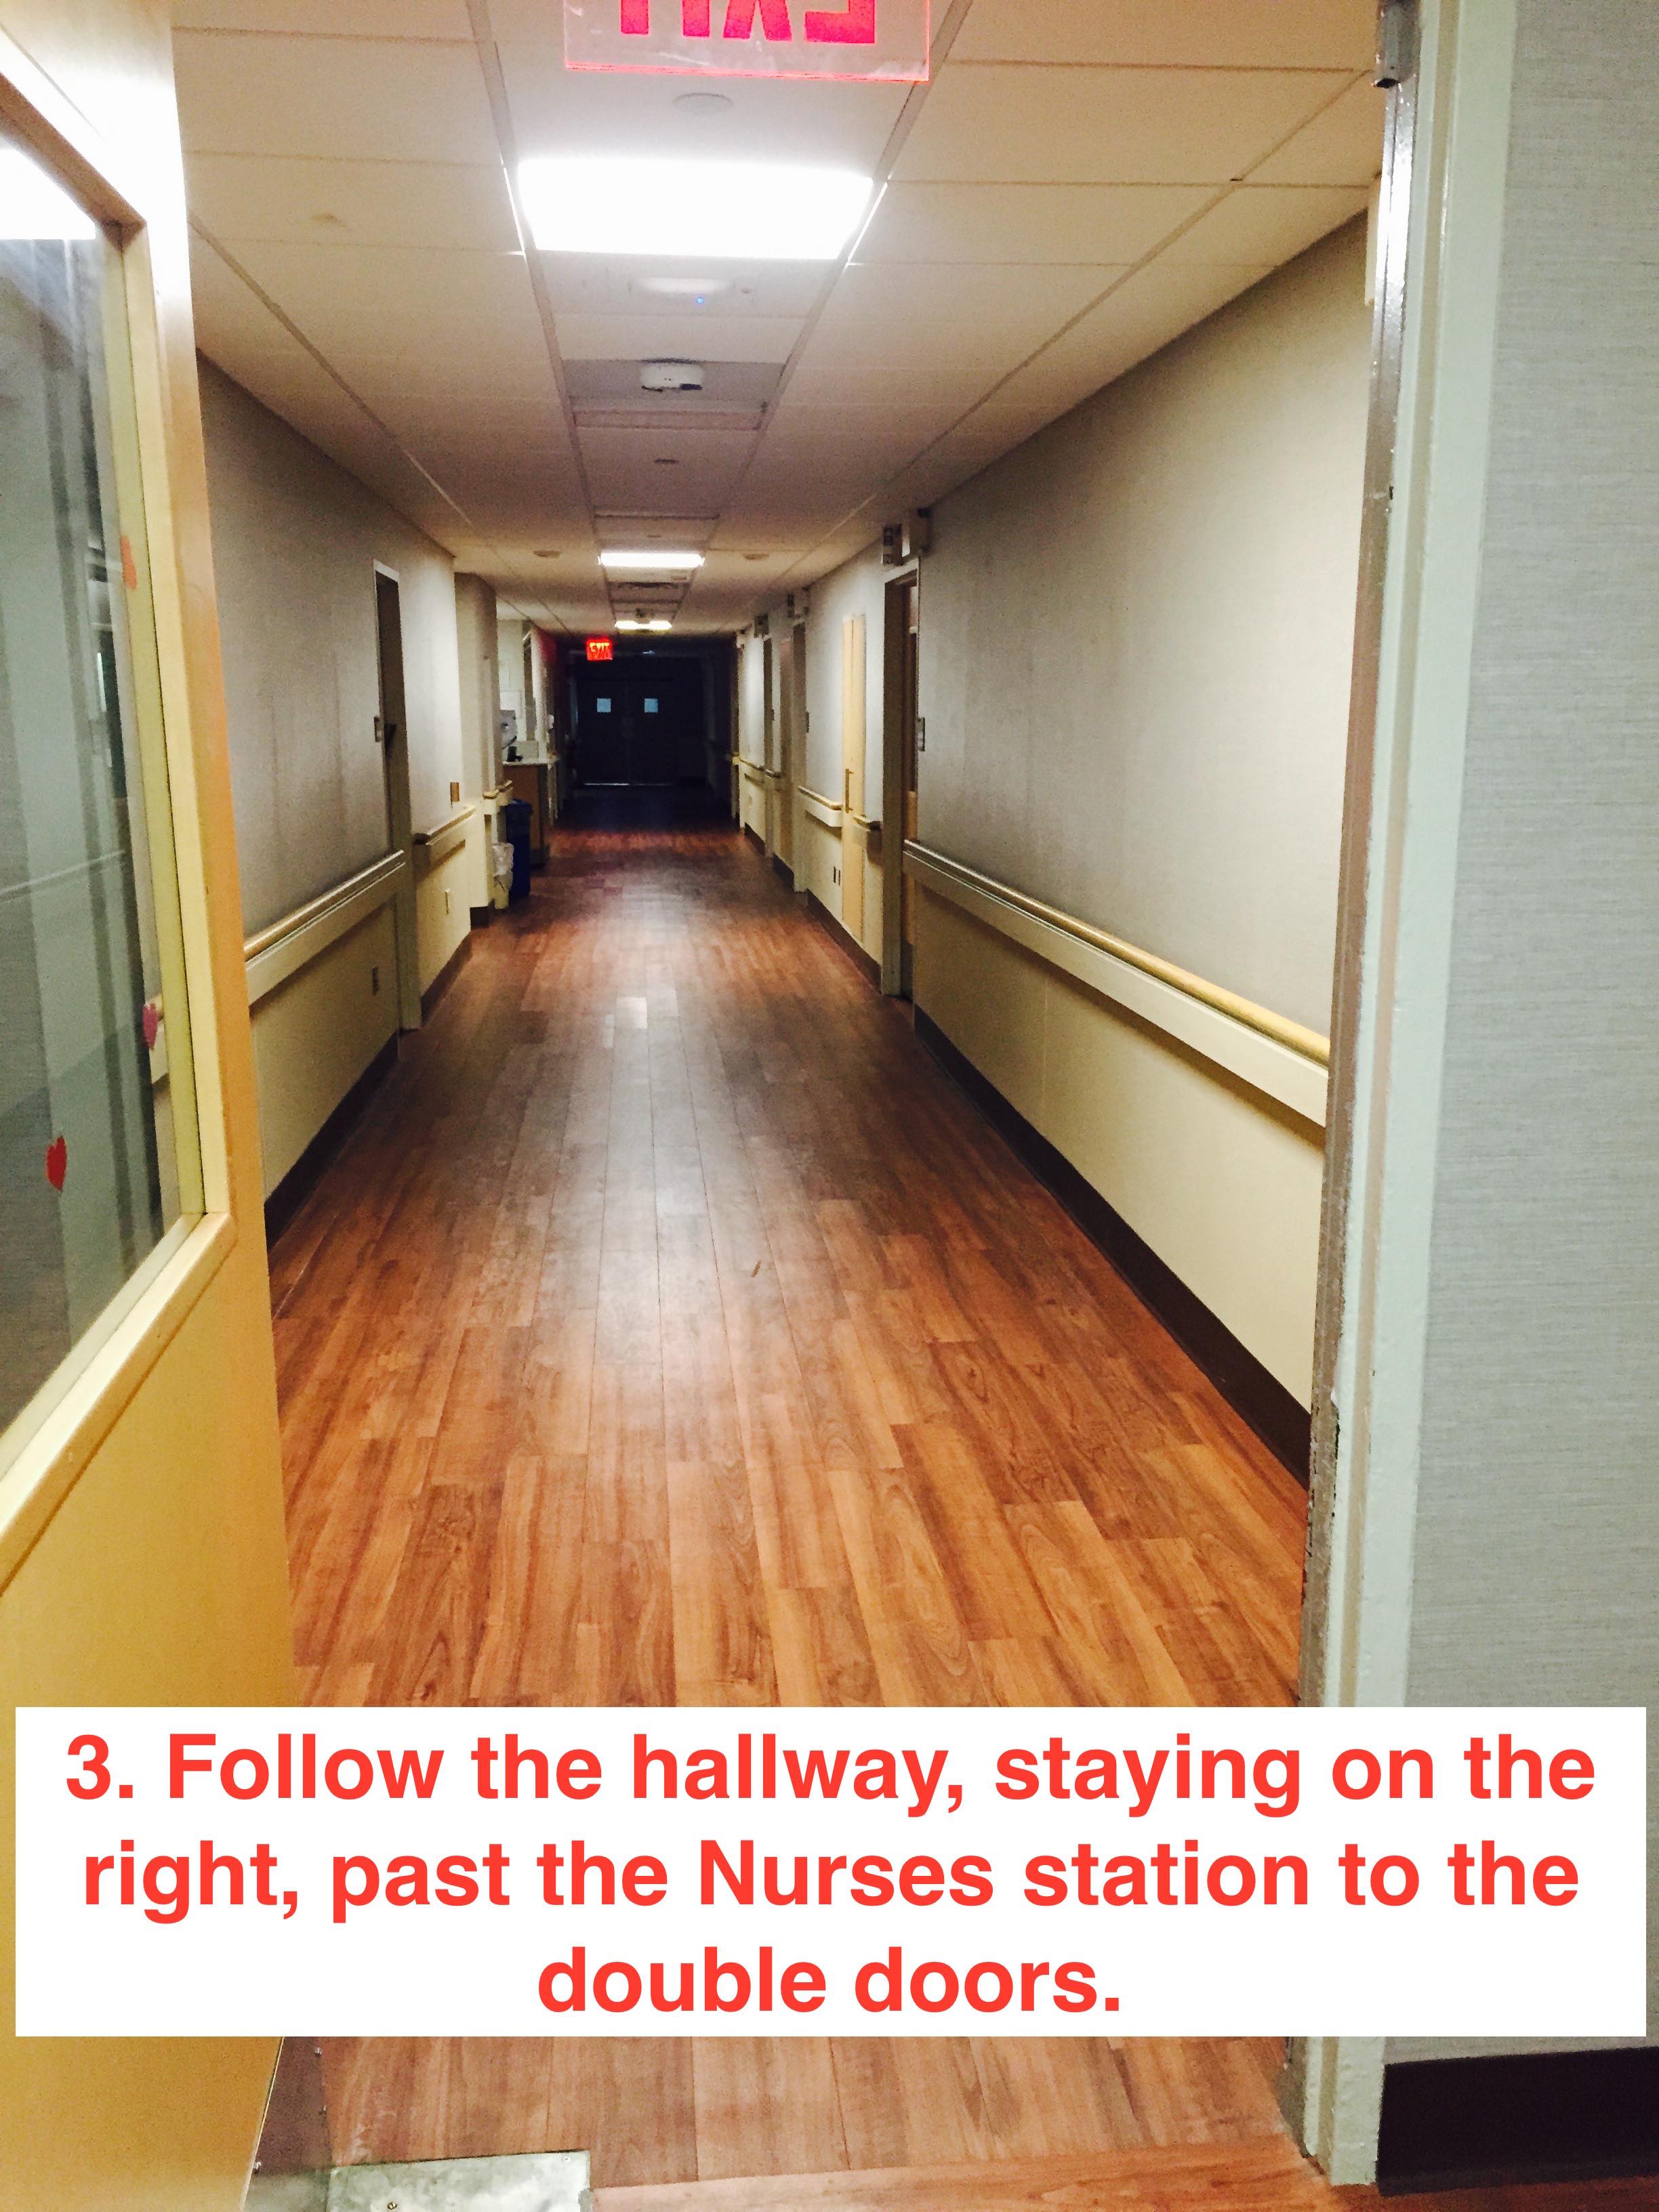 FollowThe4thfloorhallway